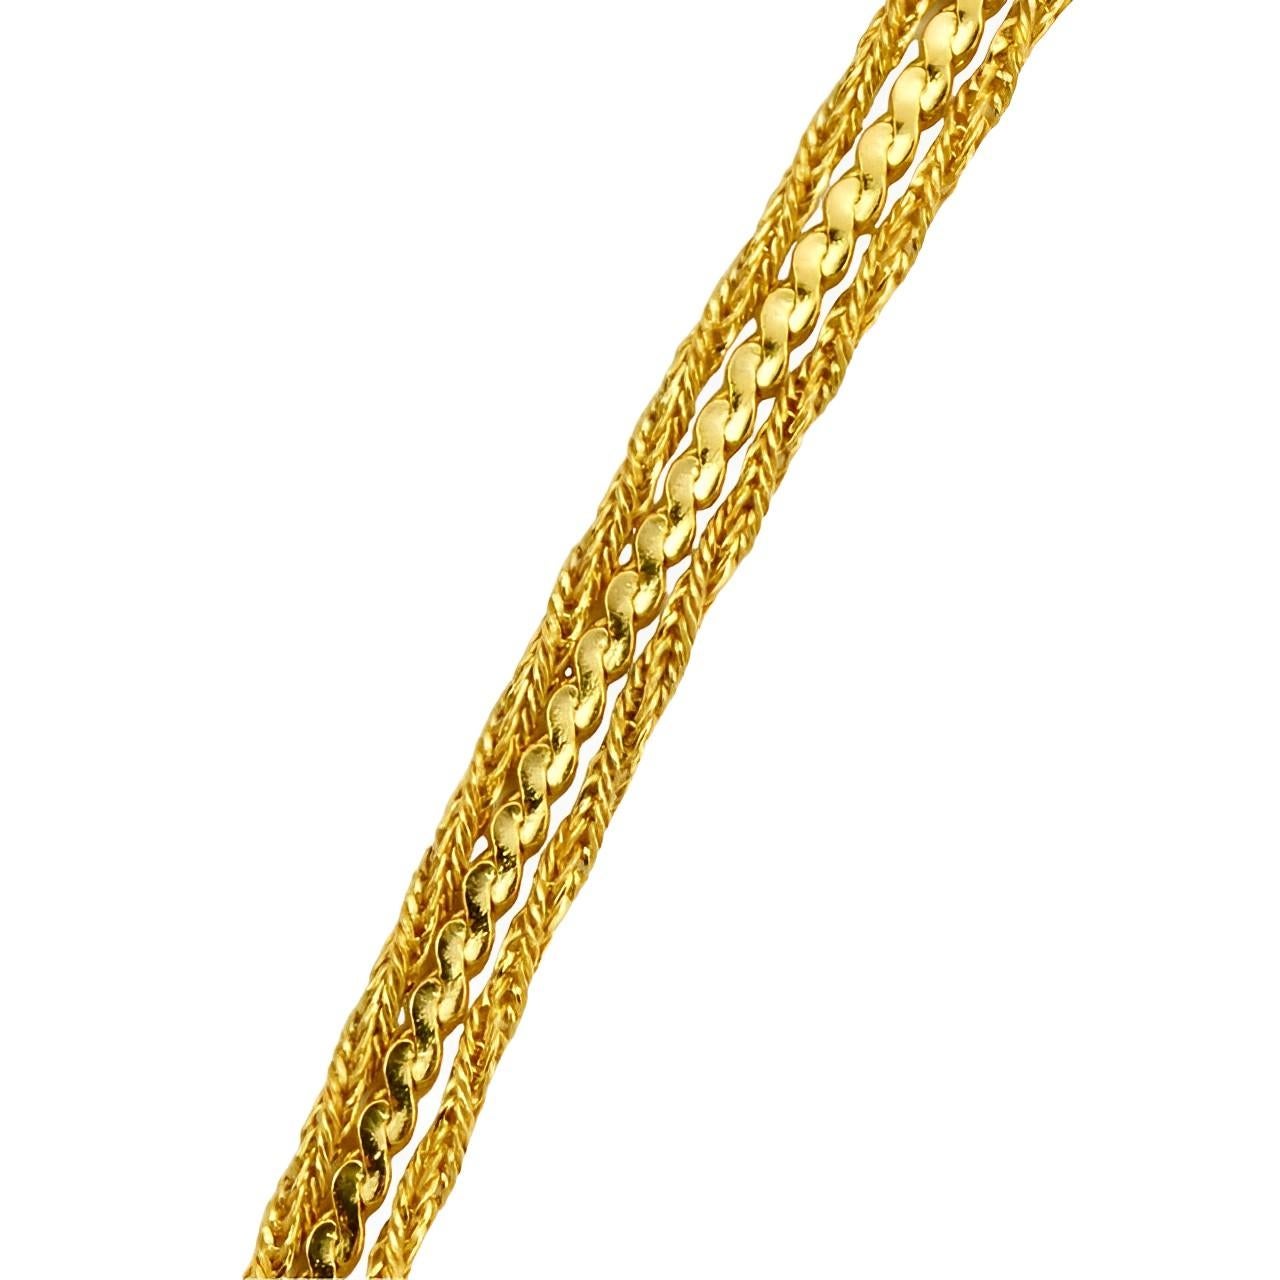 Michelle René hat ein schönes, dreisträngiges, vergoldetes Collier mit einer Schlangenkette und zwei Seilketten. Messlänge ca. 40 cm / 15,75 Zoll. Die Halskette ist in sehr gutem Zustand.

Diese schöne Vintage-Halskette stammt aus den 1980er Jahren.